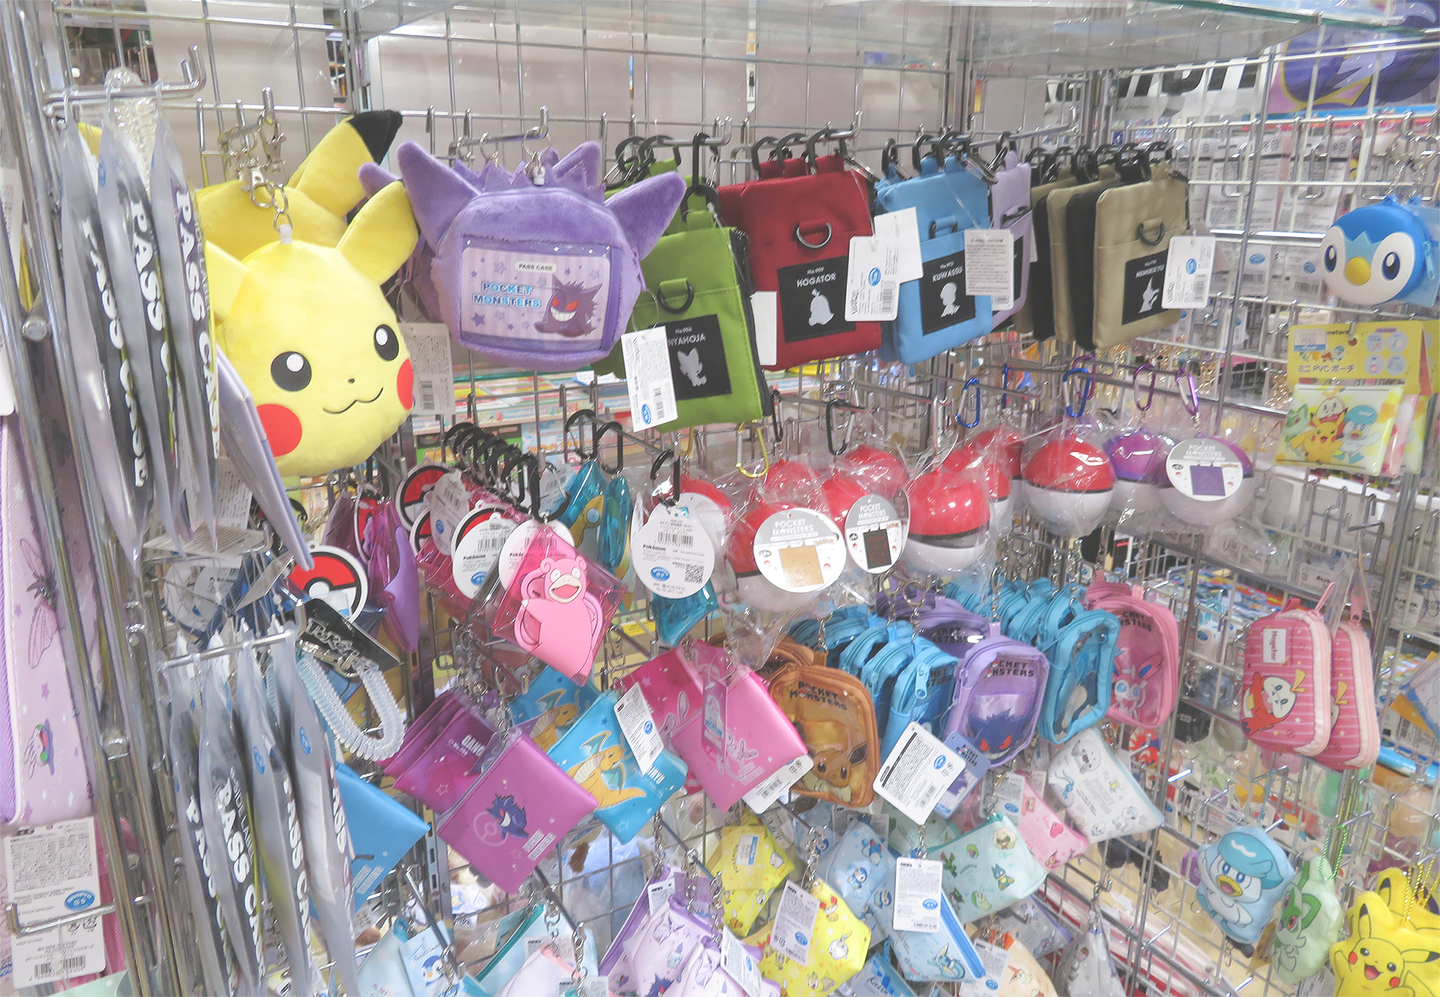 Images of POKEMON merchandise sold at YAMASHIROYA2